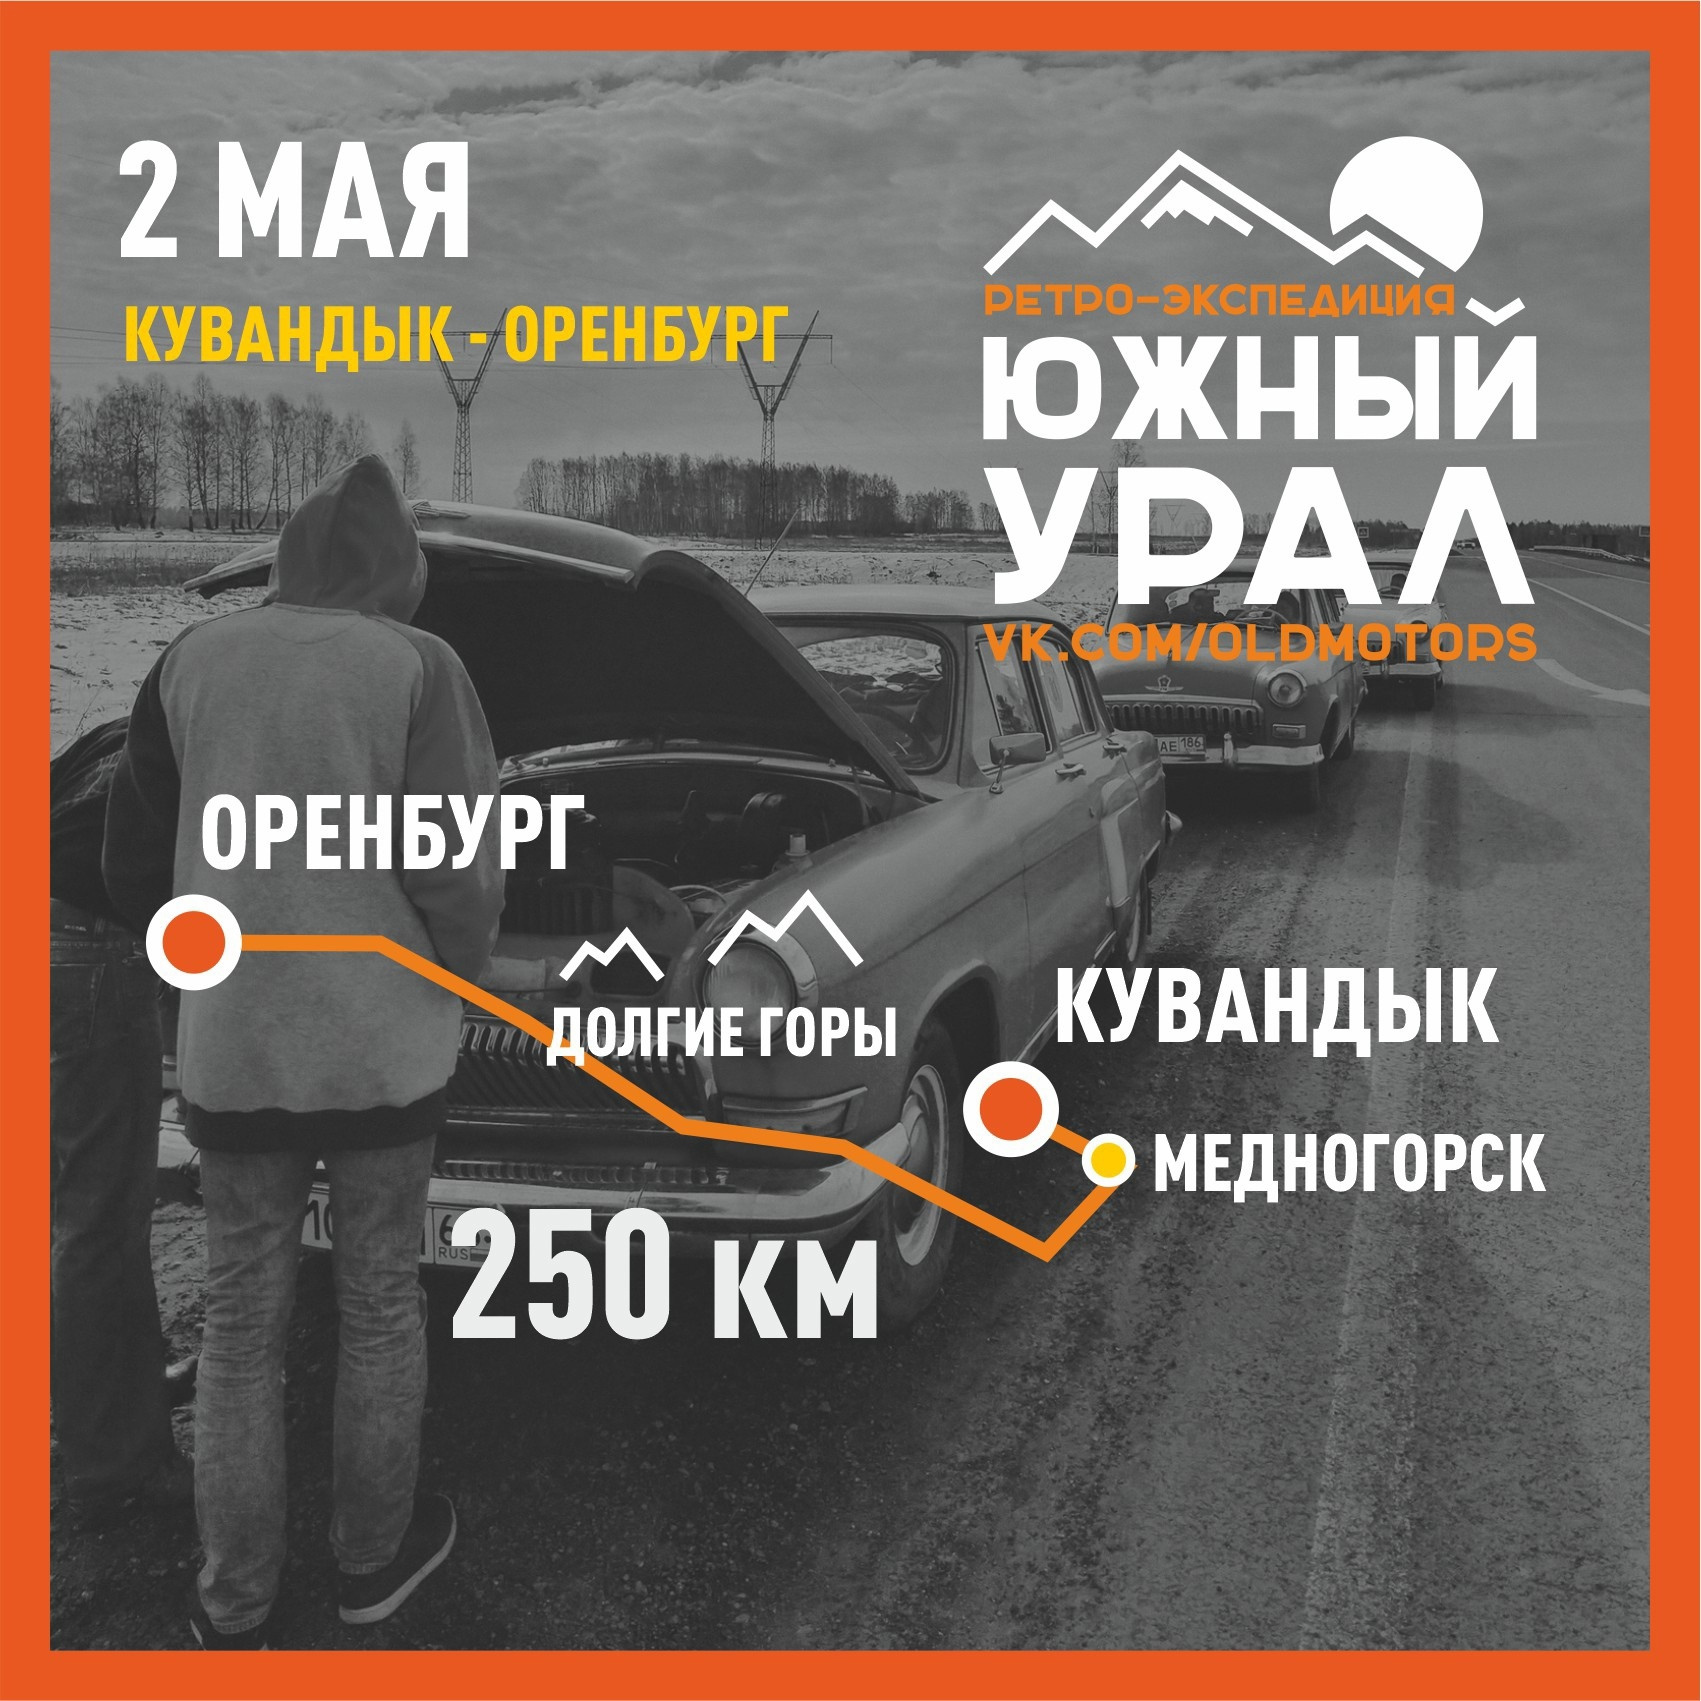 В пятый день пути автомобилисты добирались до Оренбурга